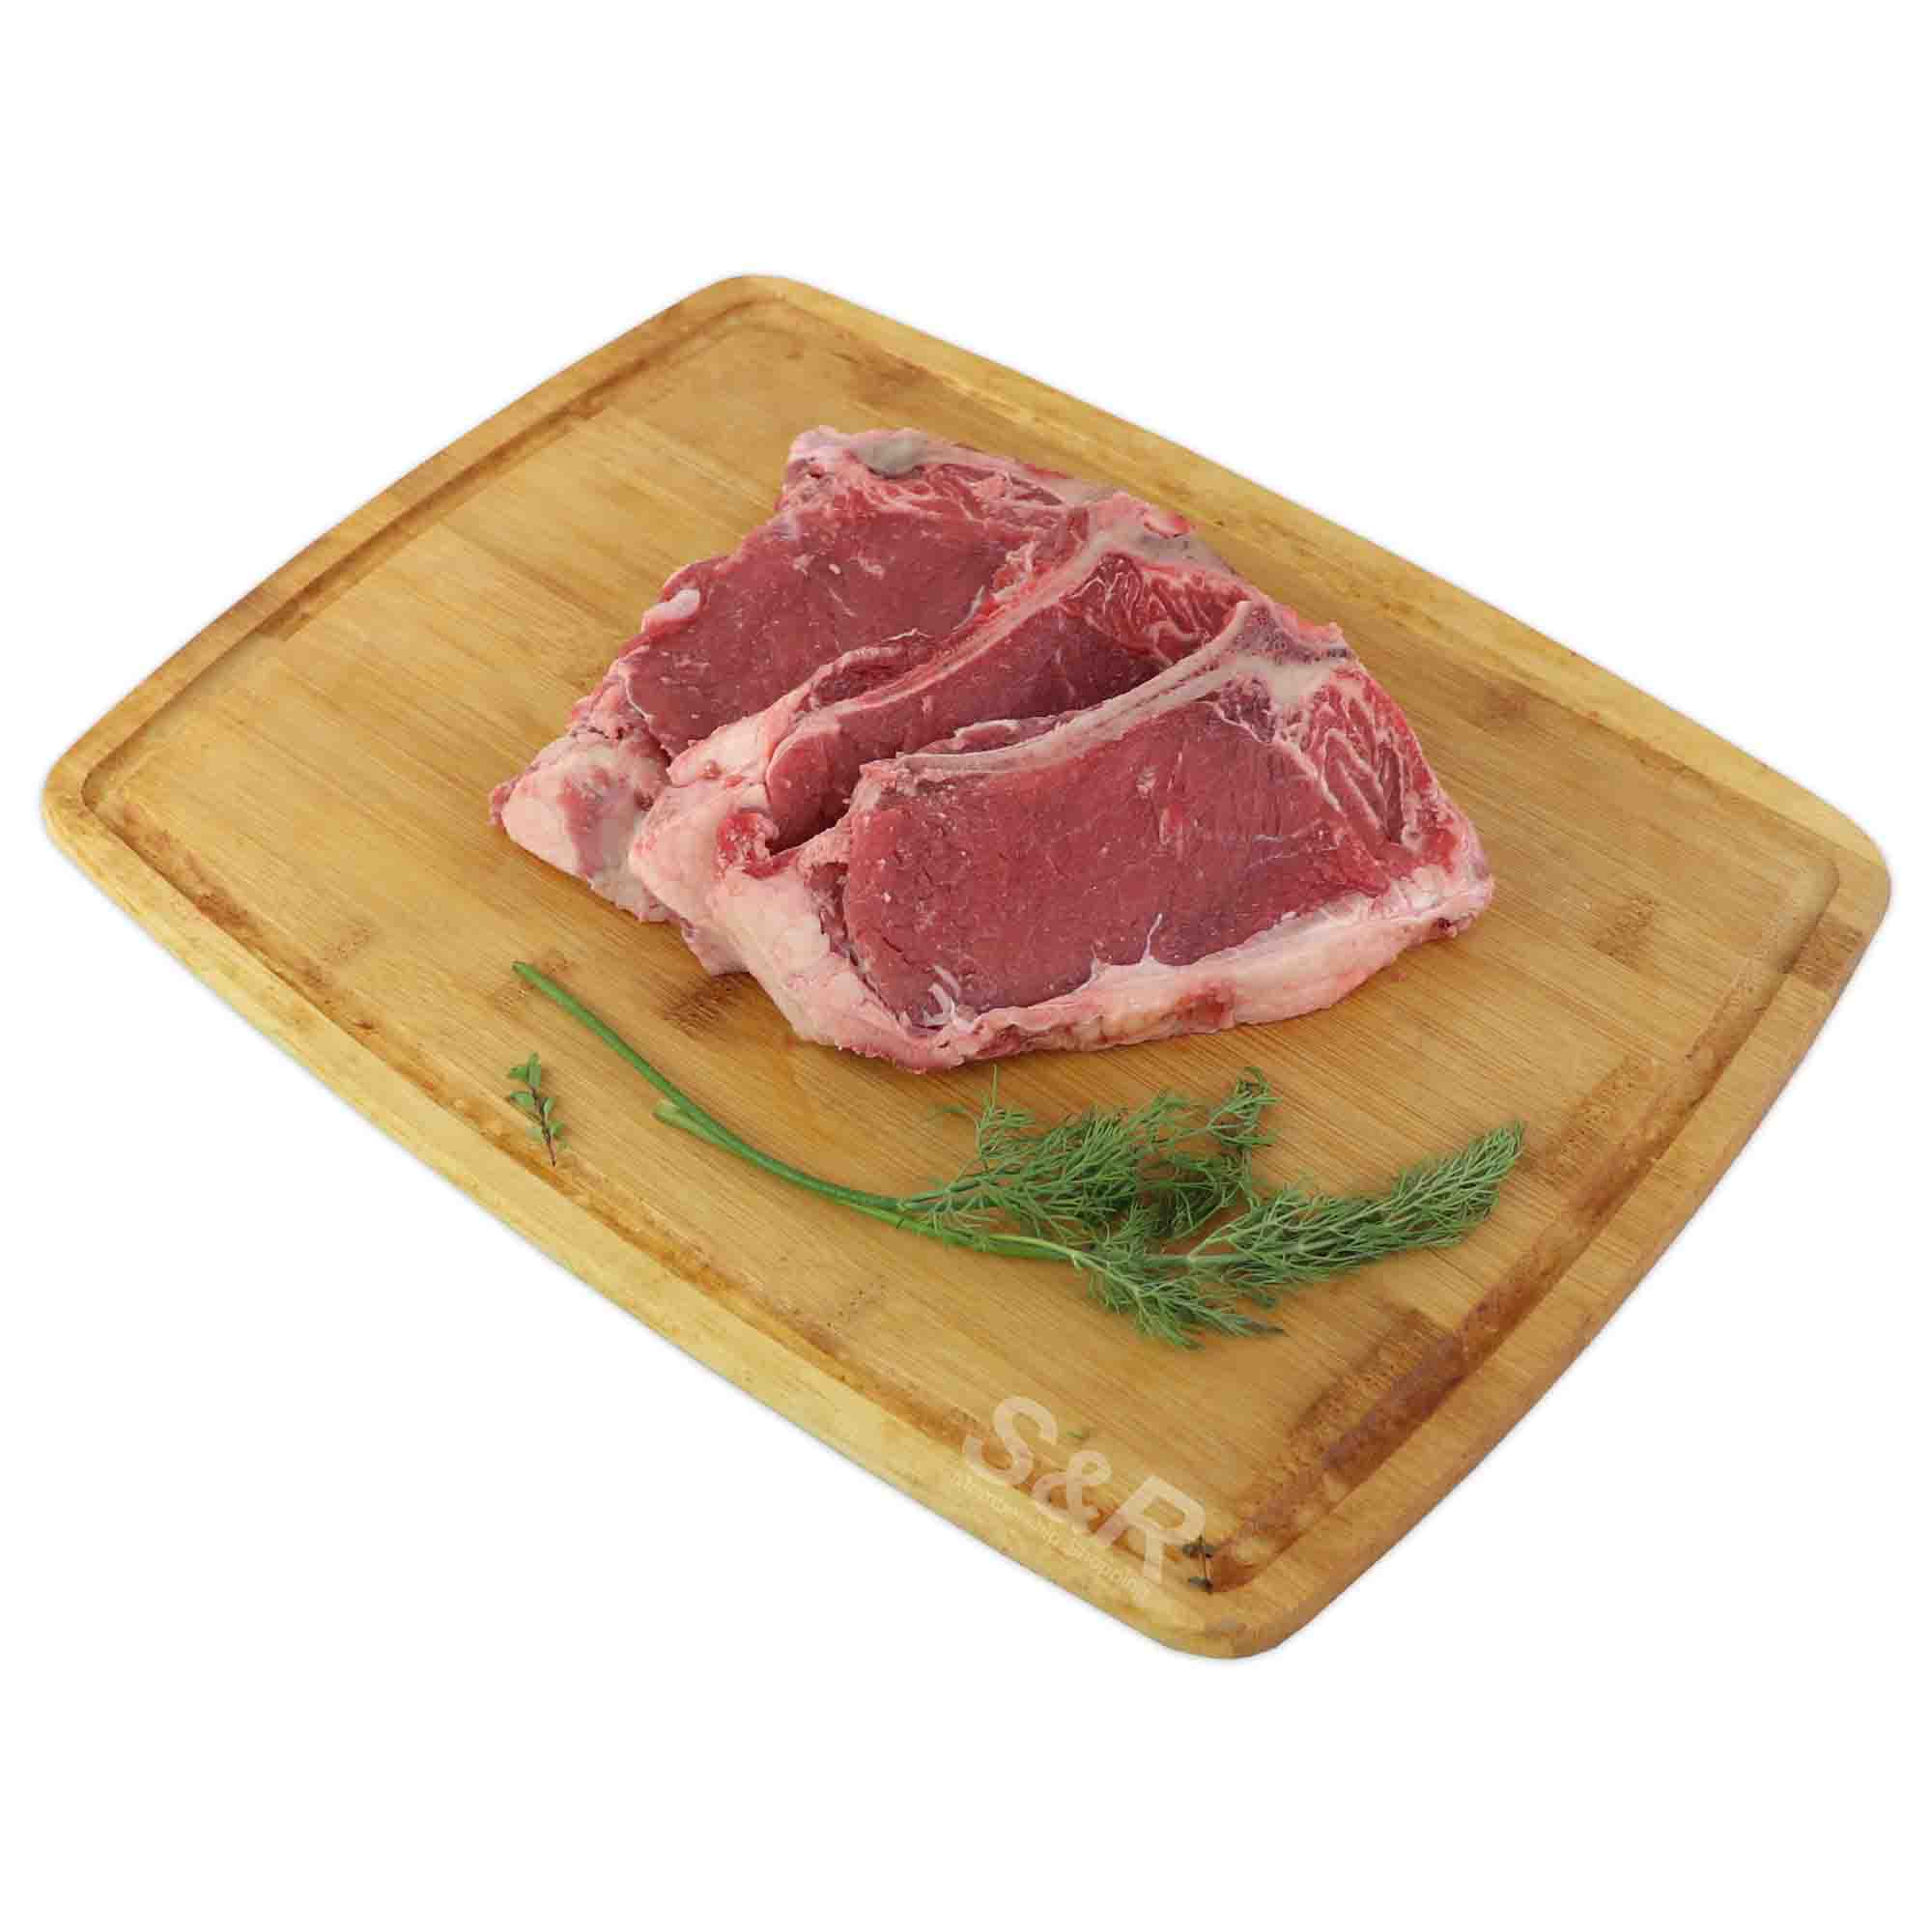 S&R Beef T-Bone Steak approx. 2kg